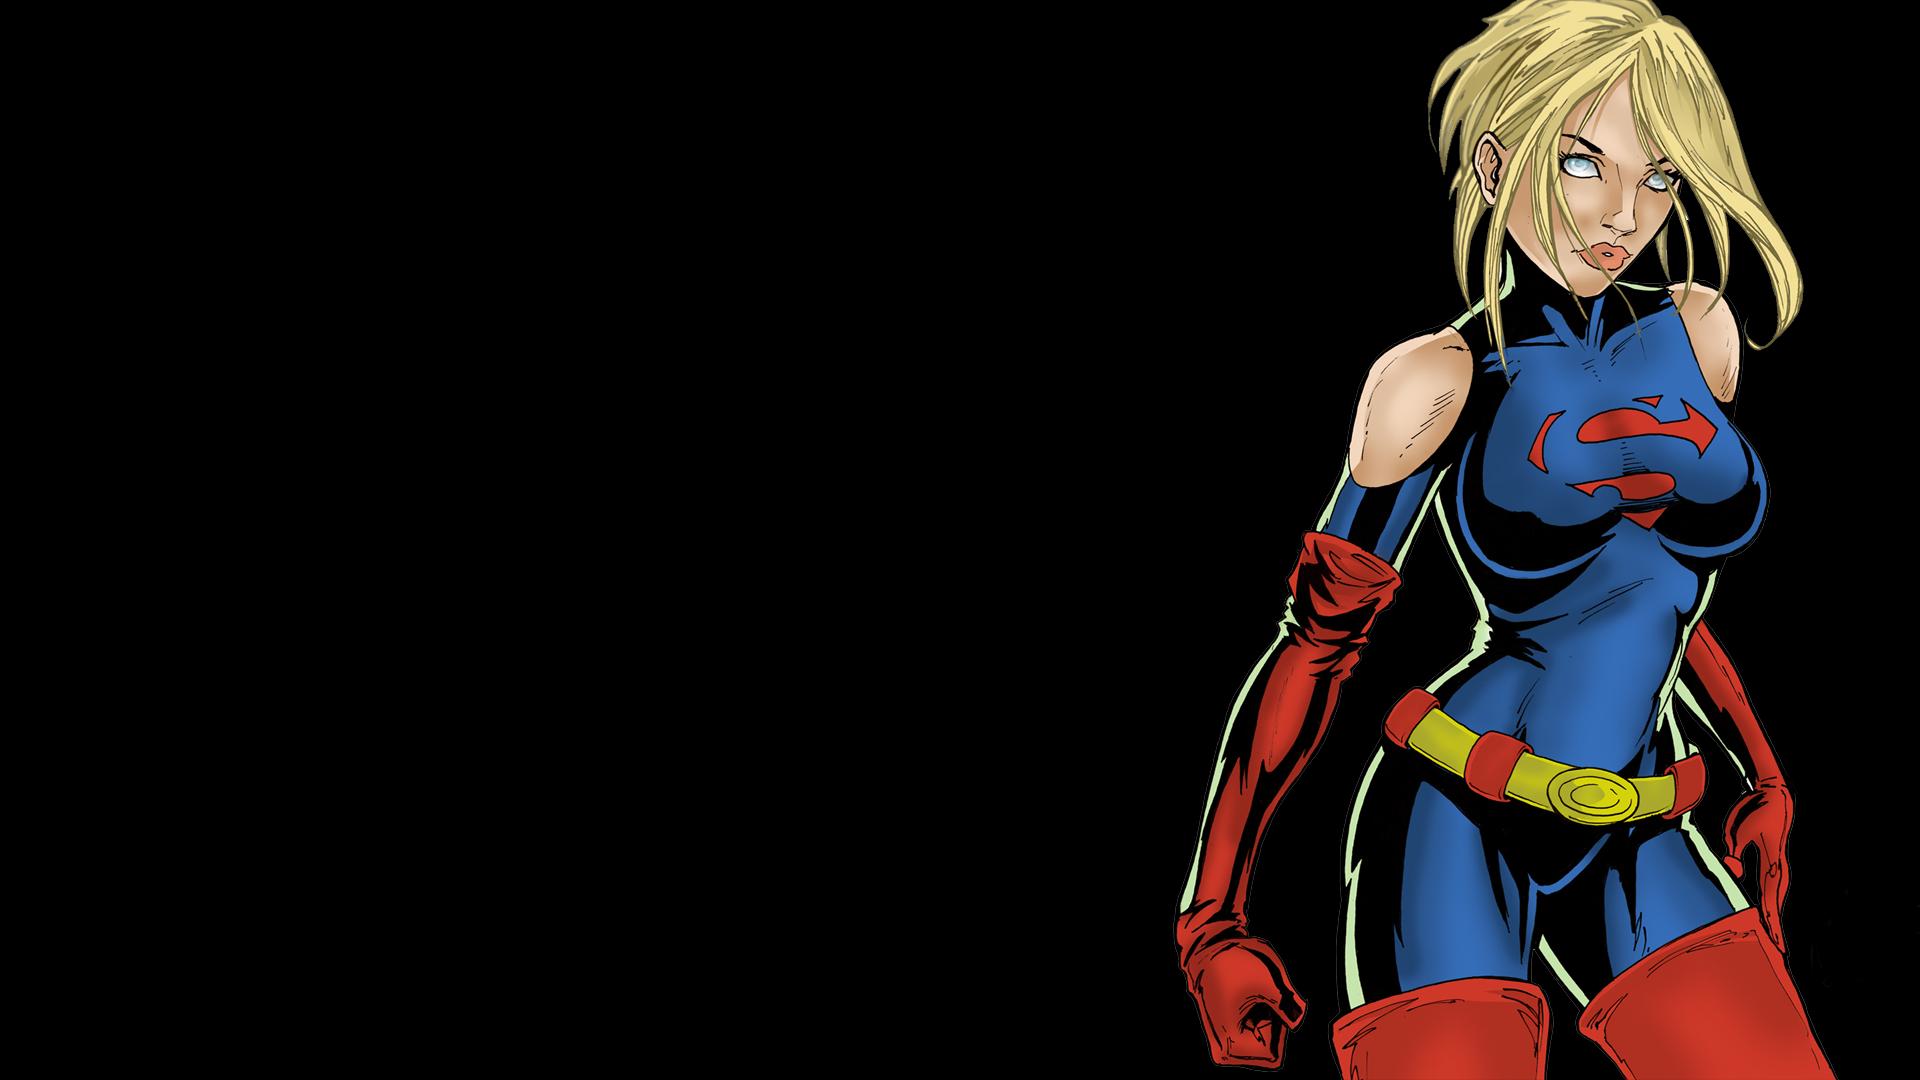 Supergirl DC-comics Black superman wallpaper | 1920x1080 | 83191 ...